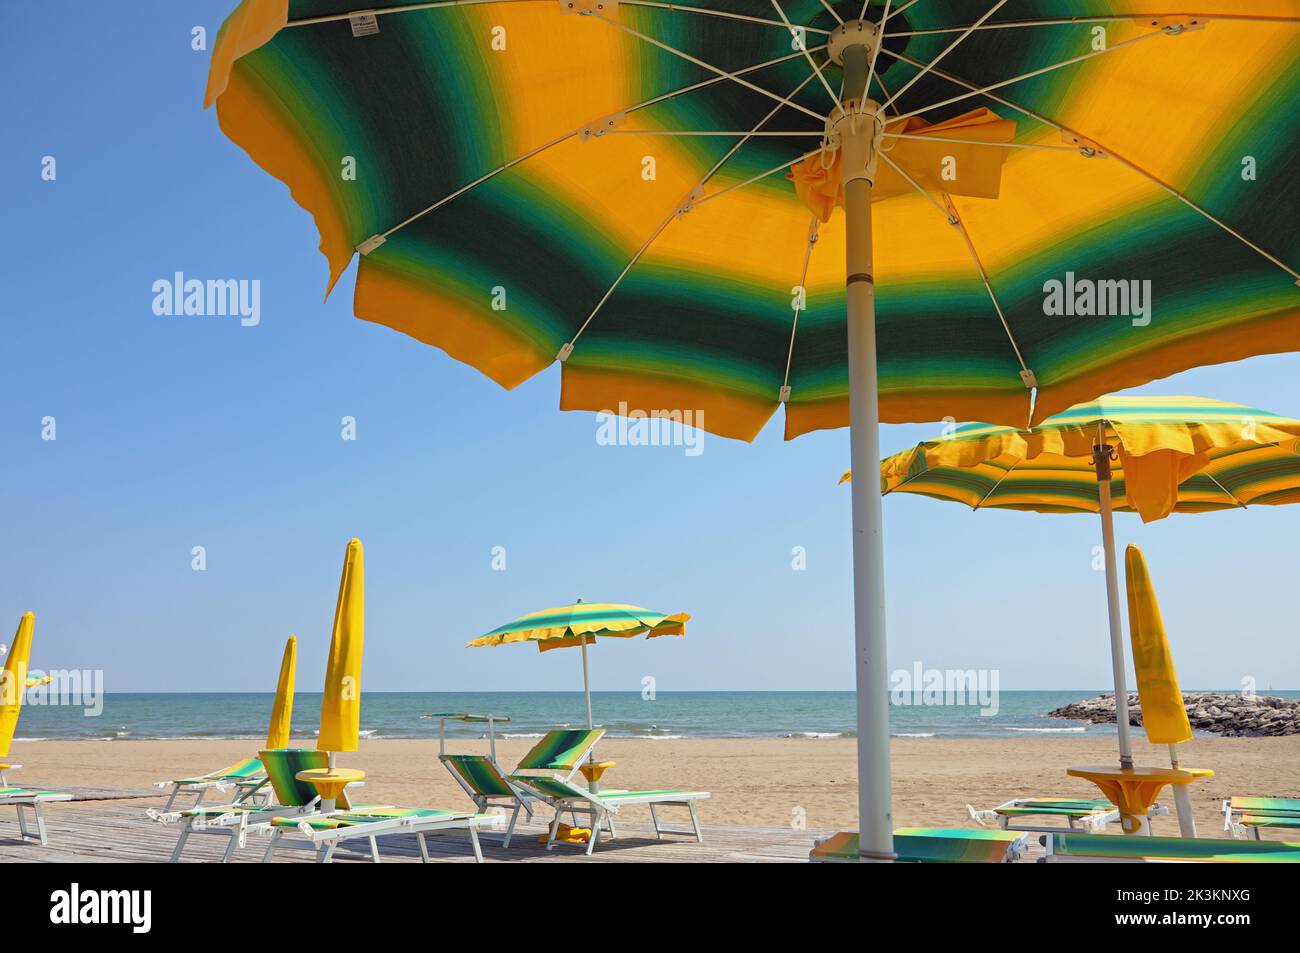 sombrillas de colores en la playa de arena junto al mar Foto de stock